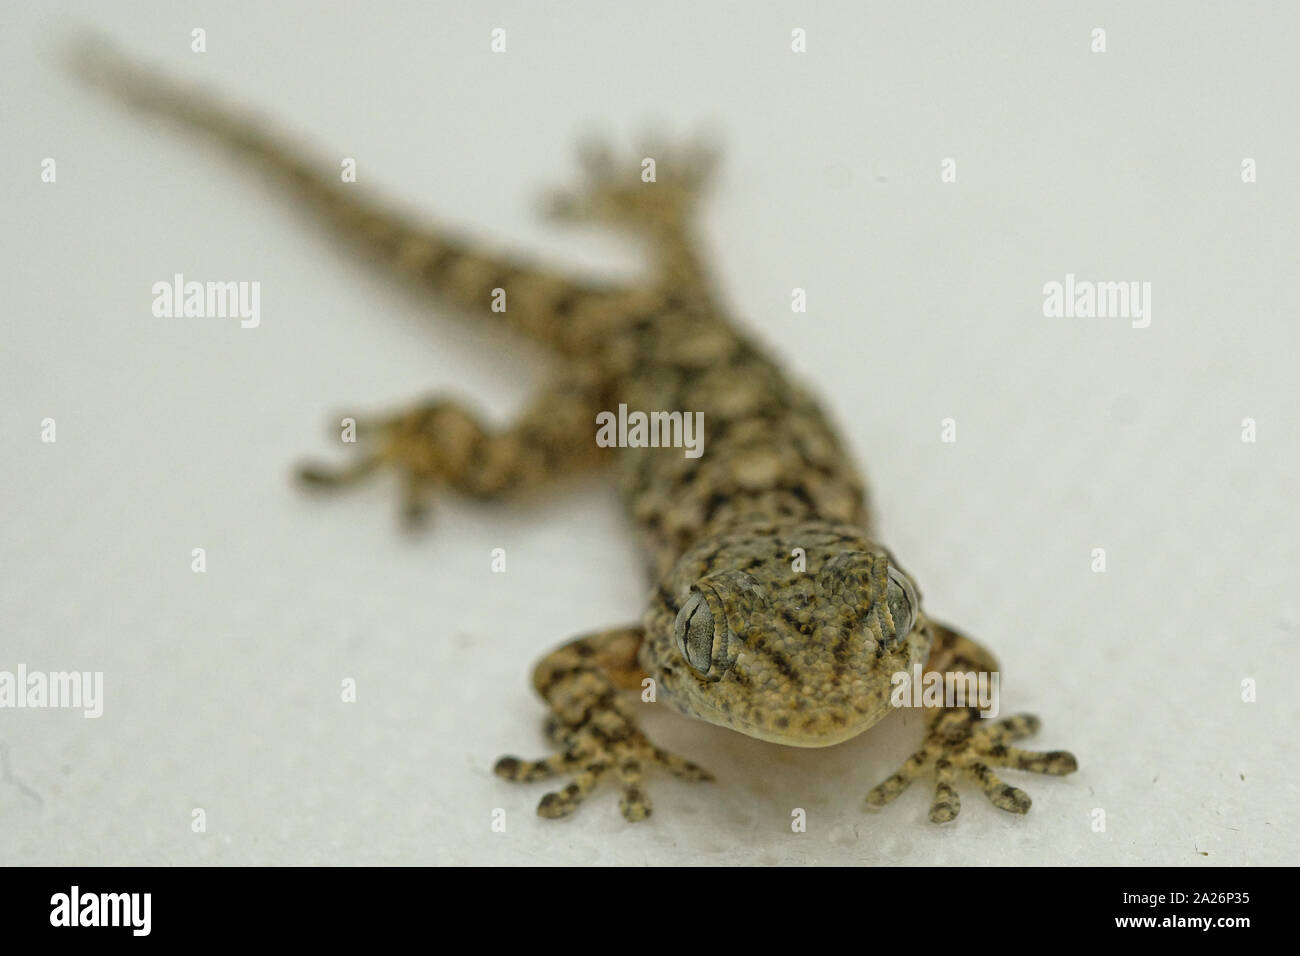 La cara y los ojos de reptiles Gecko detalles macro, una piel de animal y el fondo desenfocado Foto de stock